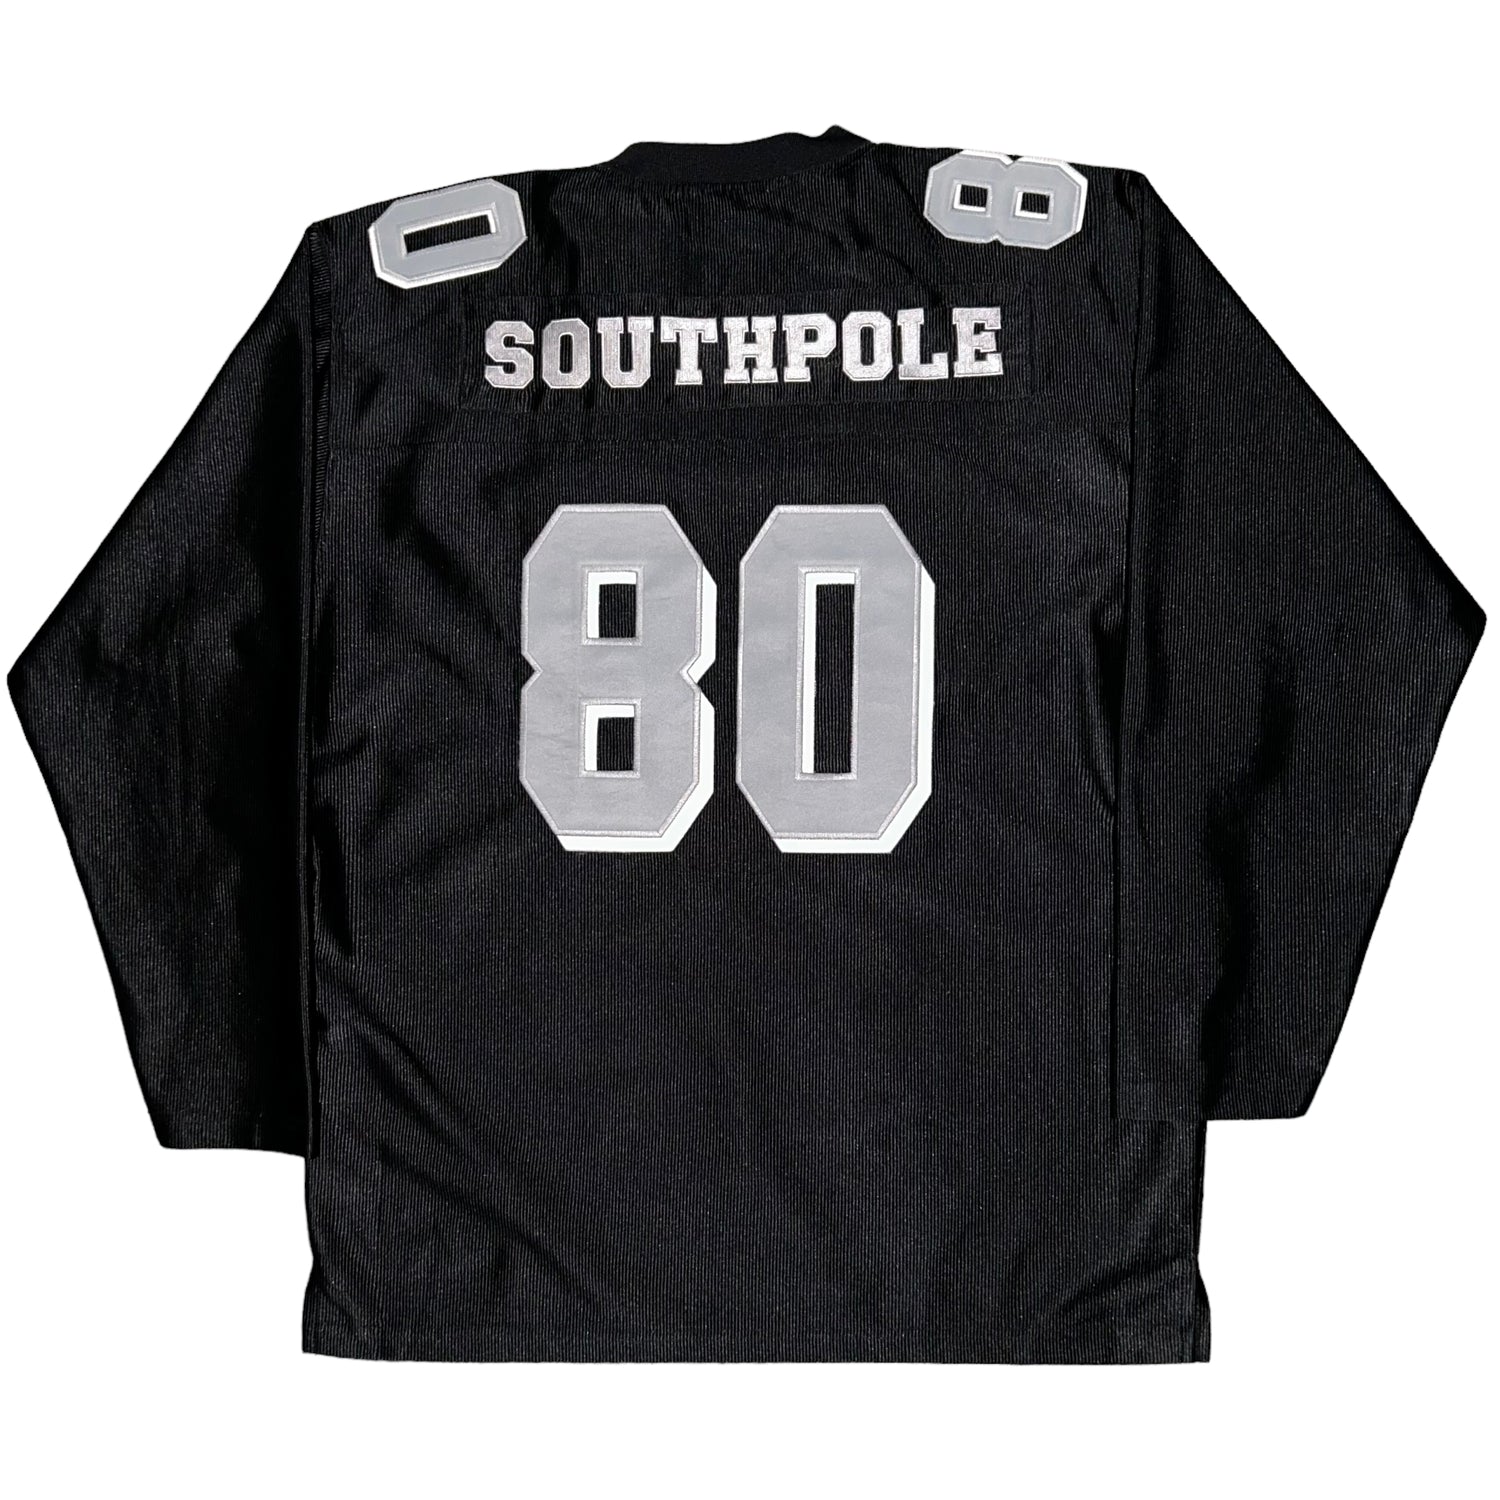 SouthPole Vintage Jersey (XL)